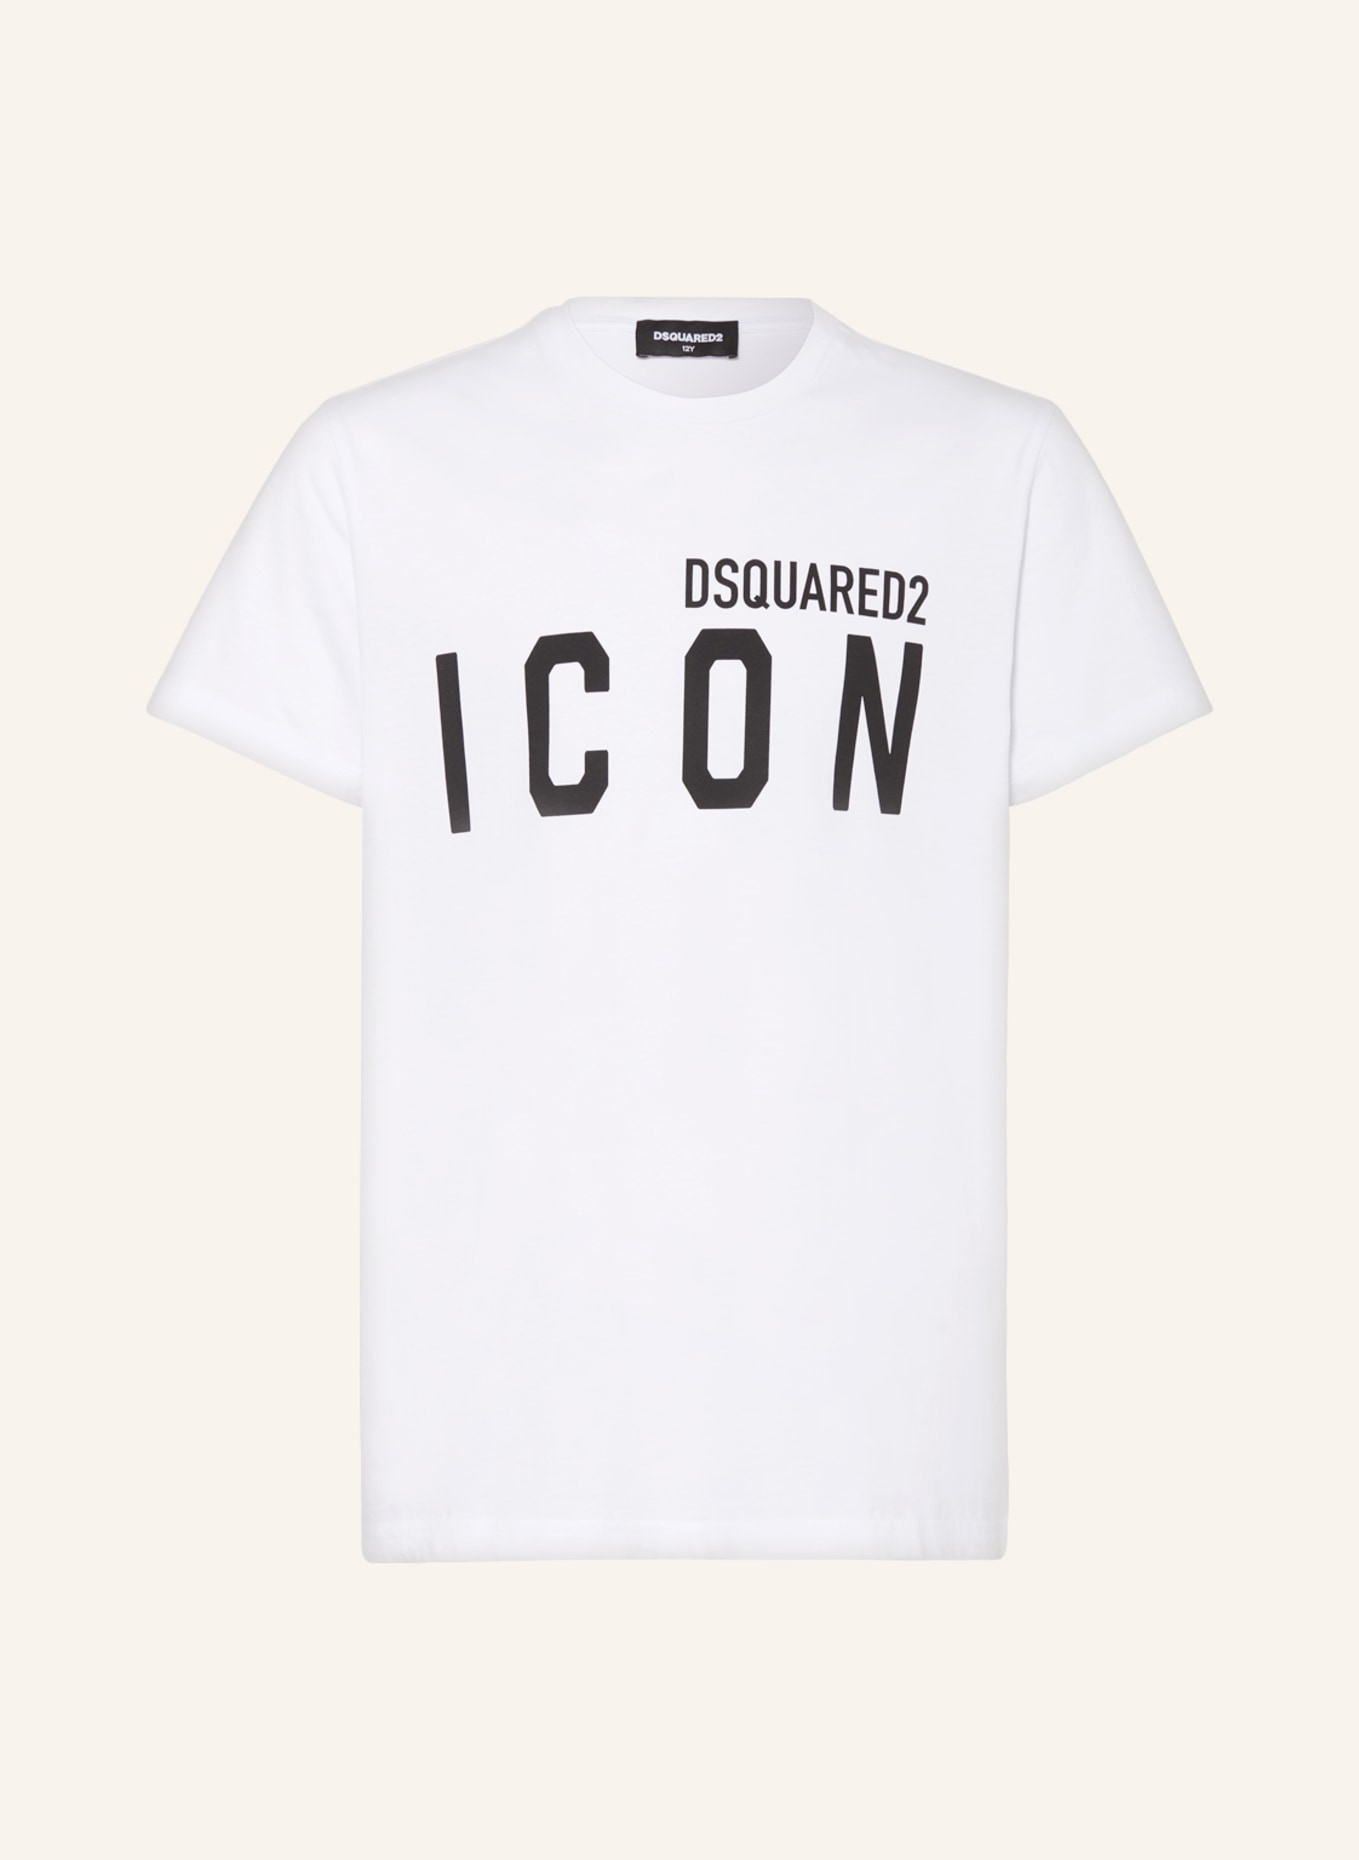 DSQUARED2 T-Shirt ICON, Farbe: WEISS/ SCHWARZ (Bild 1)